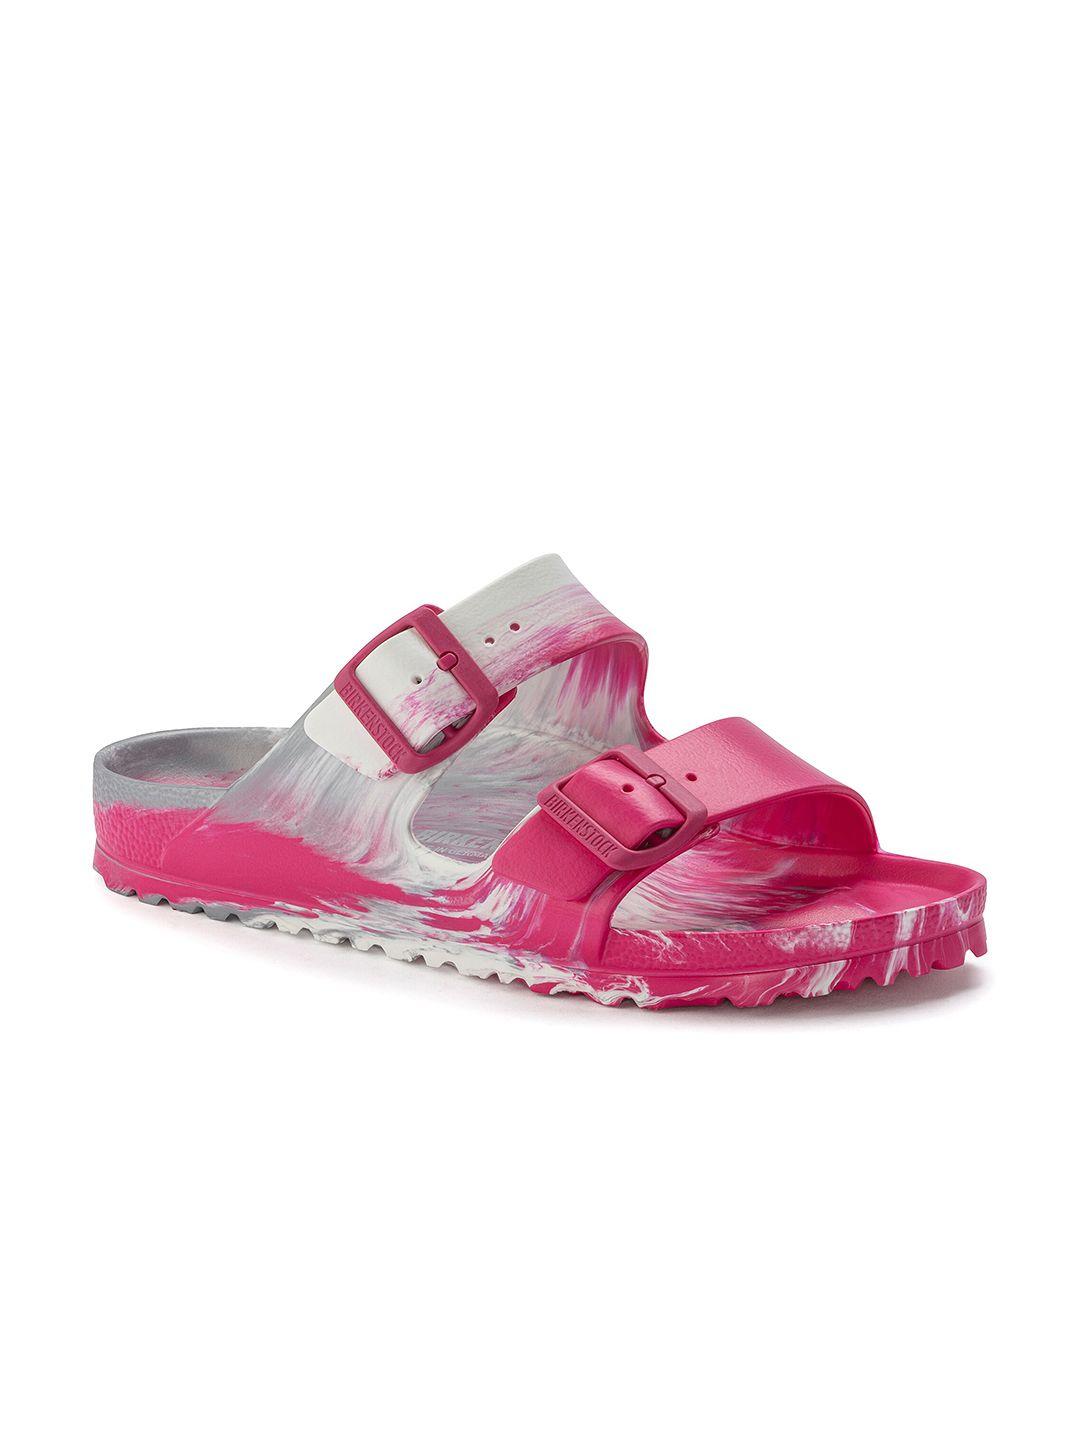 birkenstock unisex pink regular width arizona sandals